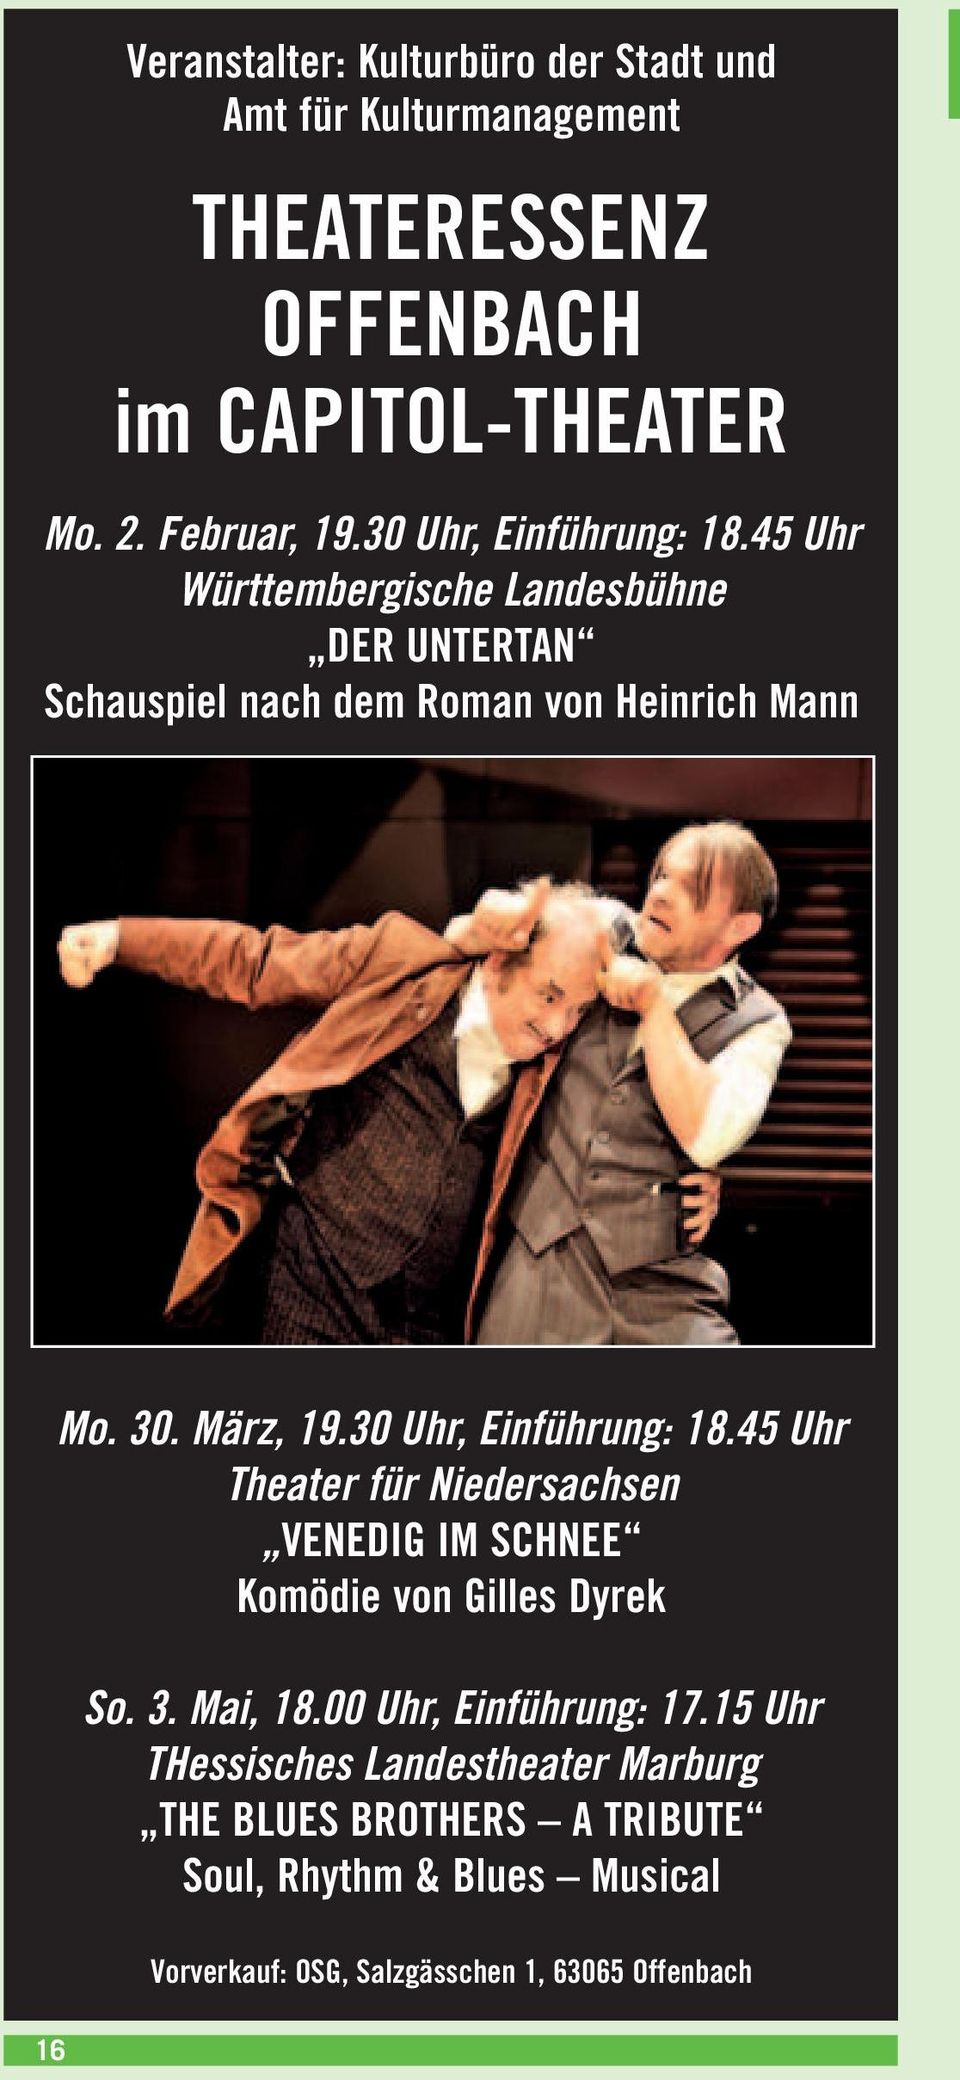 30 Uhr, Einführung: 18.45 Uhr Theater für Niedersachsen VENEDIG IM SCHNEE Komödie von Gilles Dyrek So. 3. Mai, 18.00 Uhr, Einführung: 17.